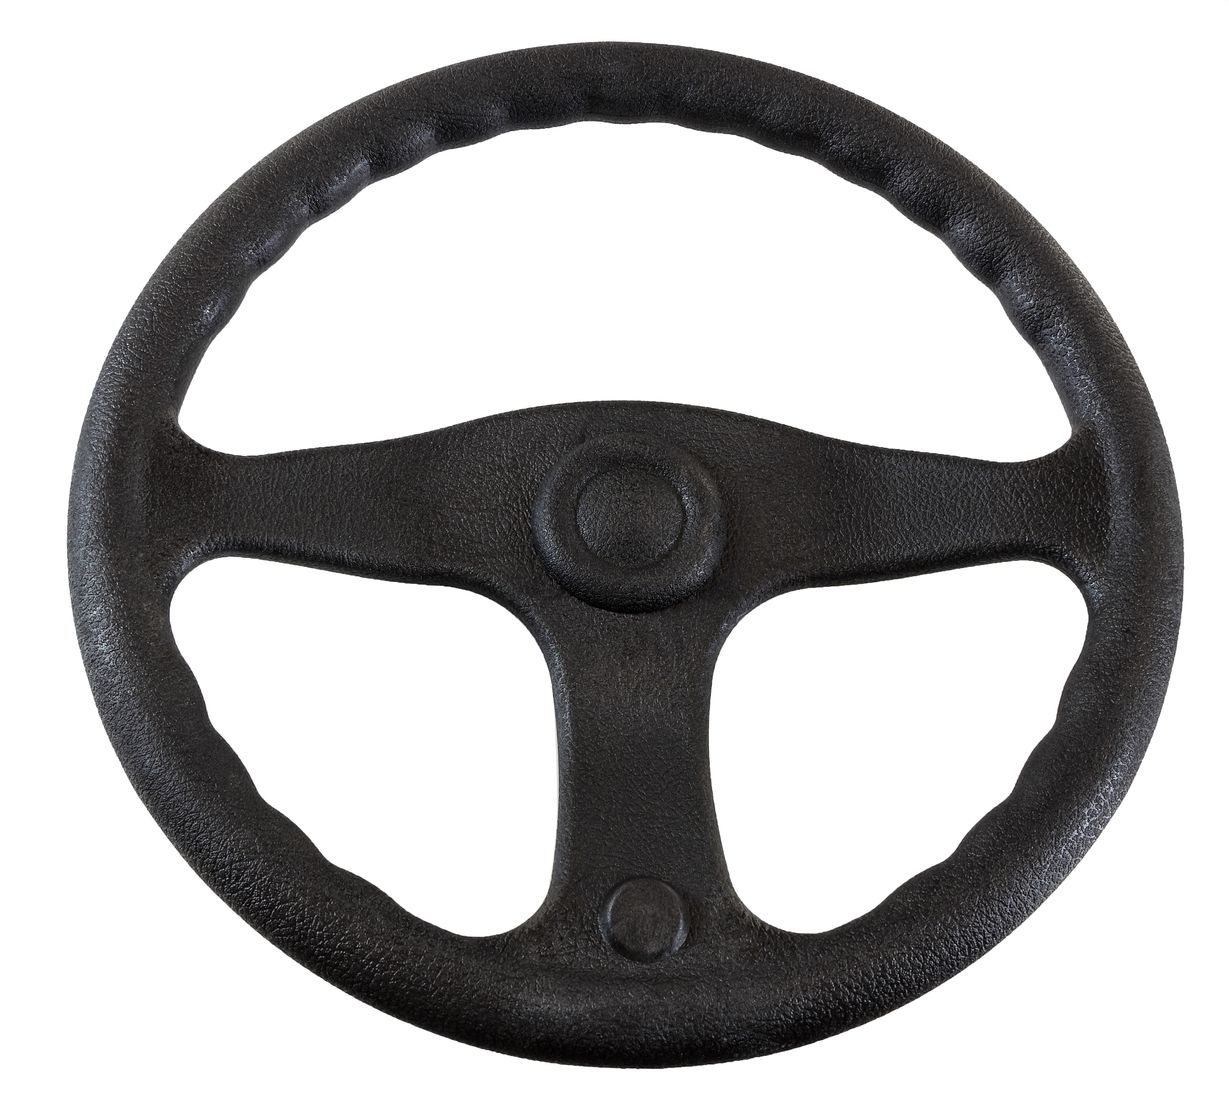 Рулевое колесо E.Chance, обод и спицы черные д. 330 мм D33_EC рулевое колесо 7400 7400ss